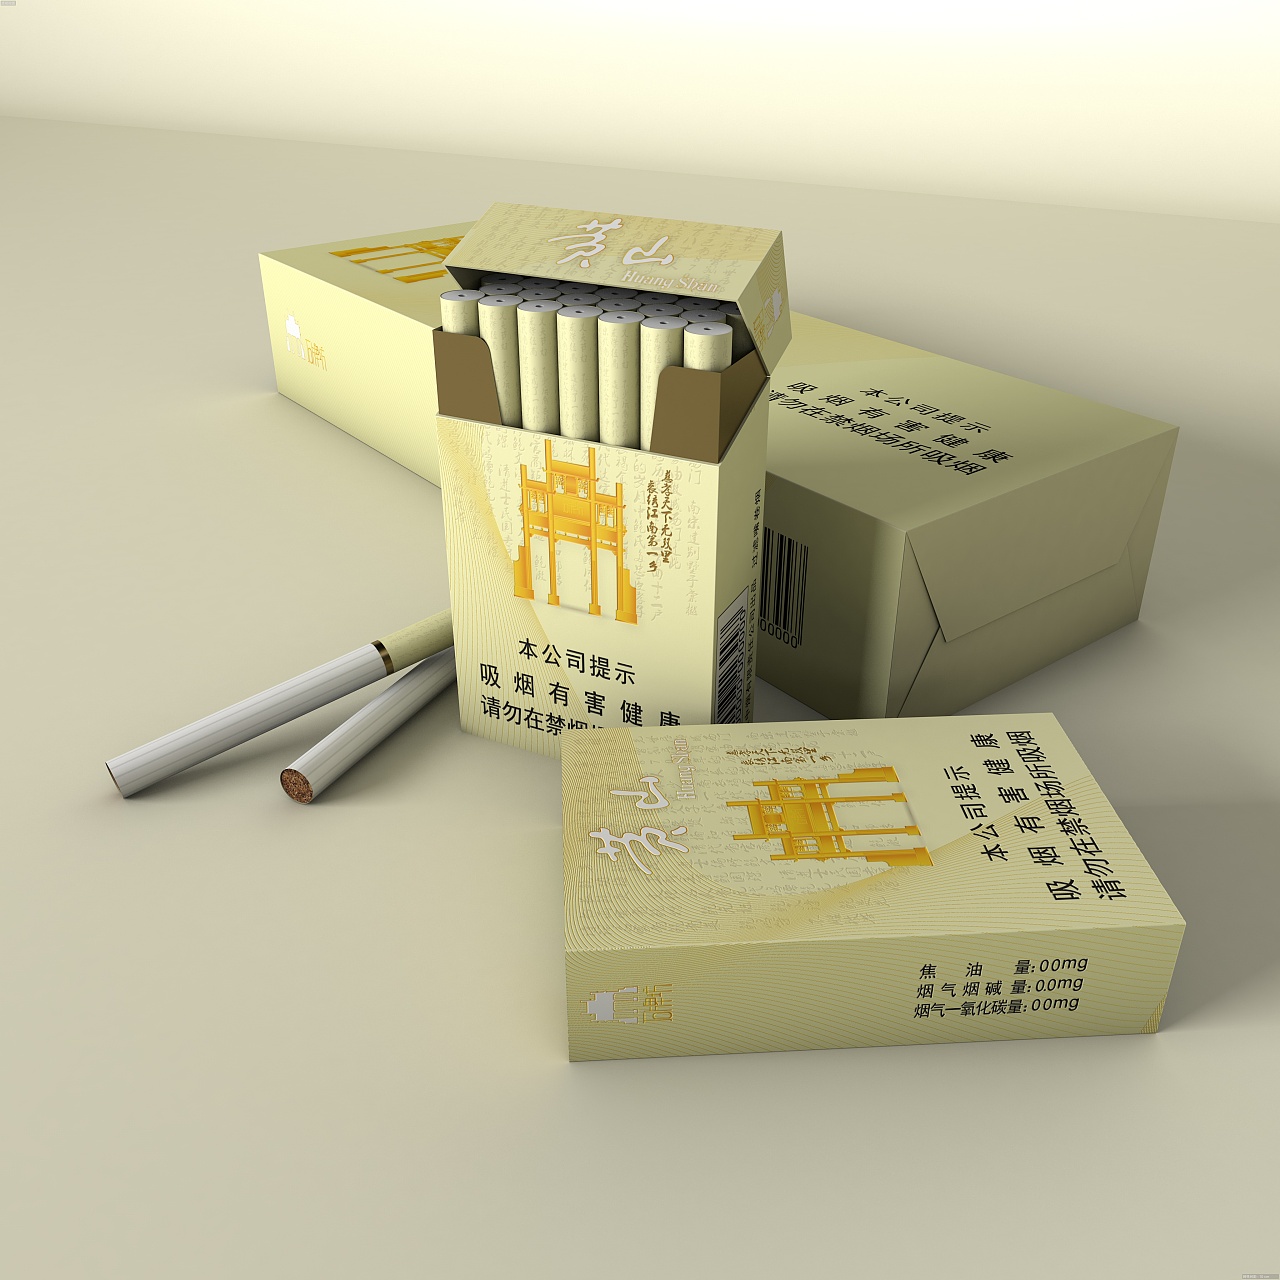 黄山石牌坊香烟包装设计